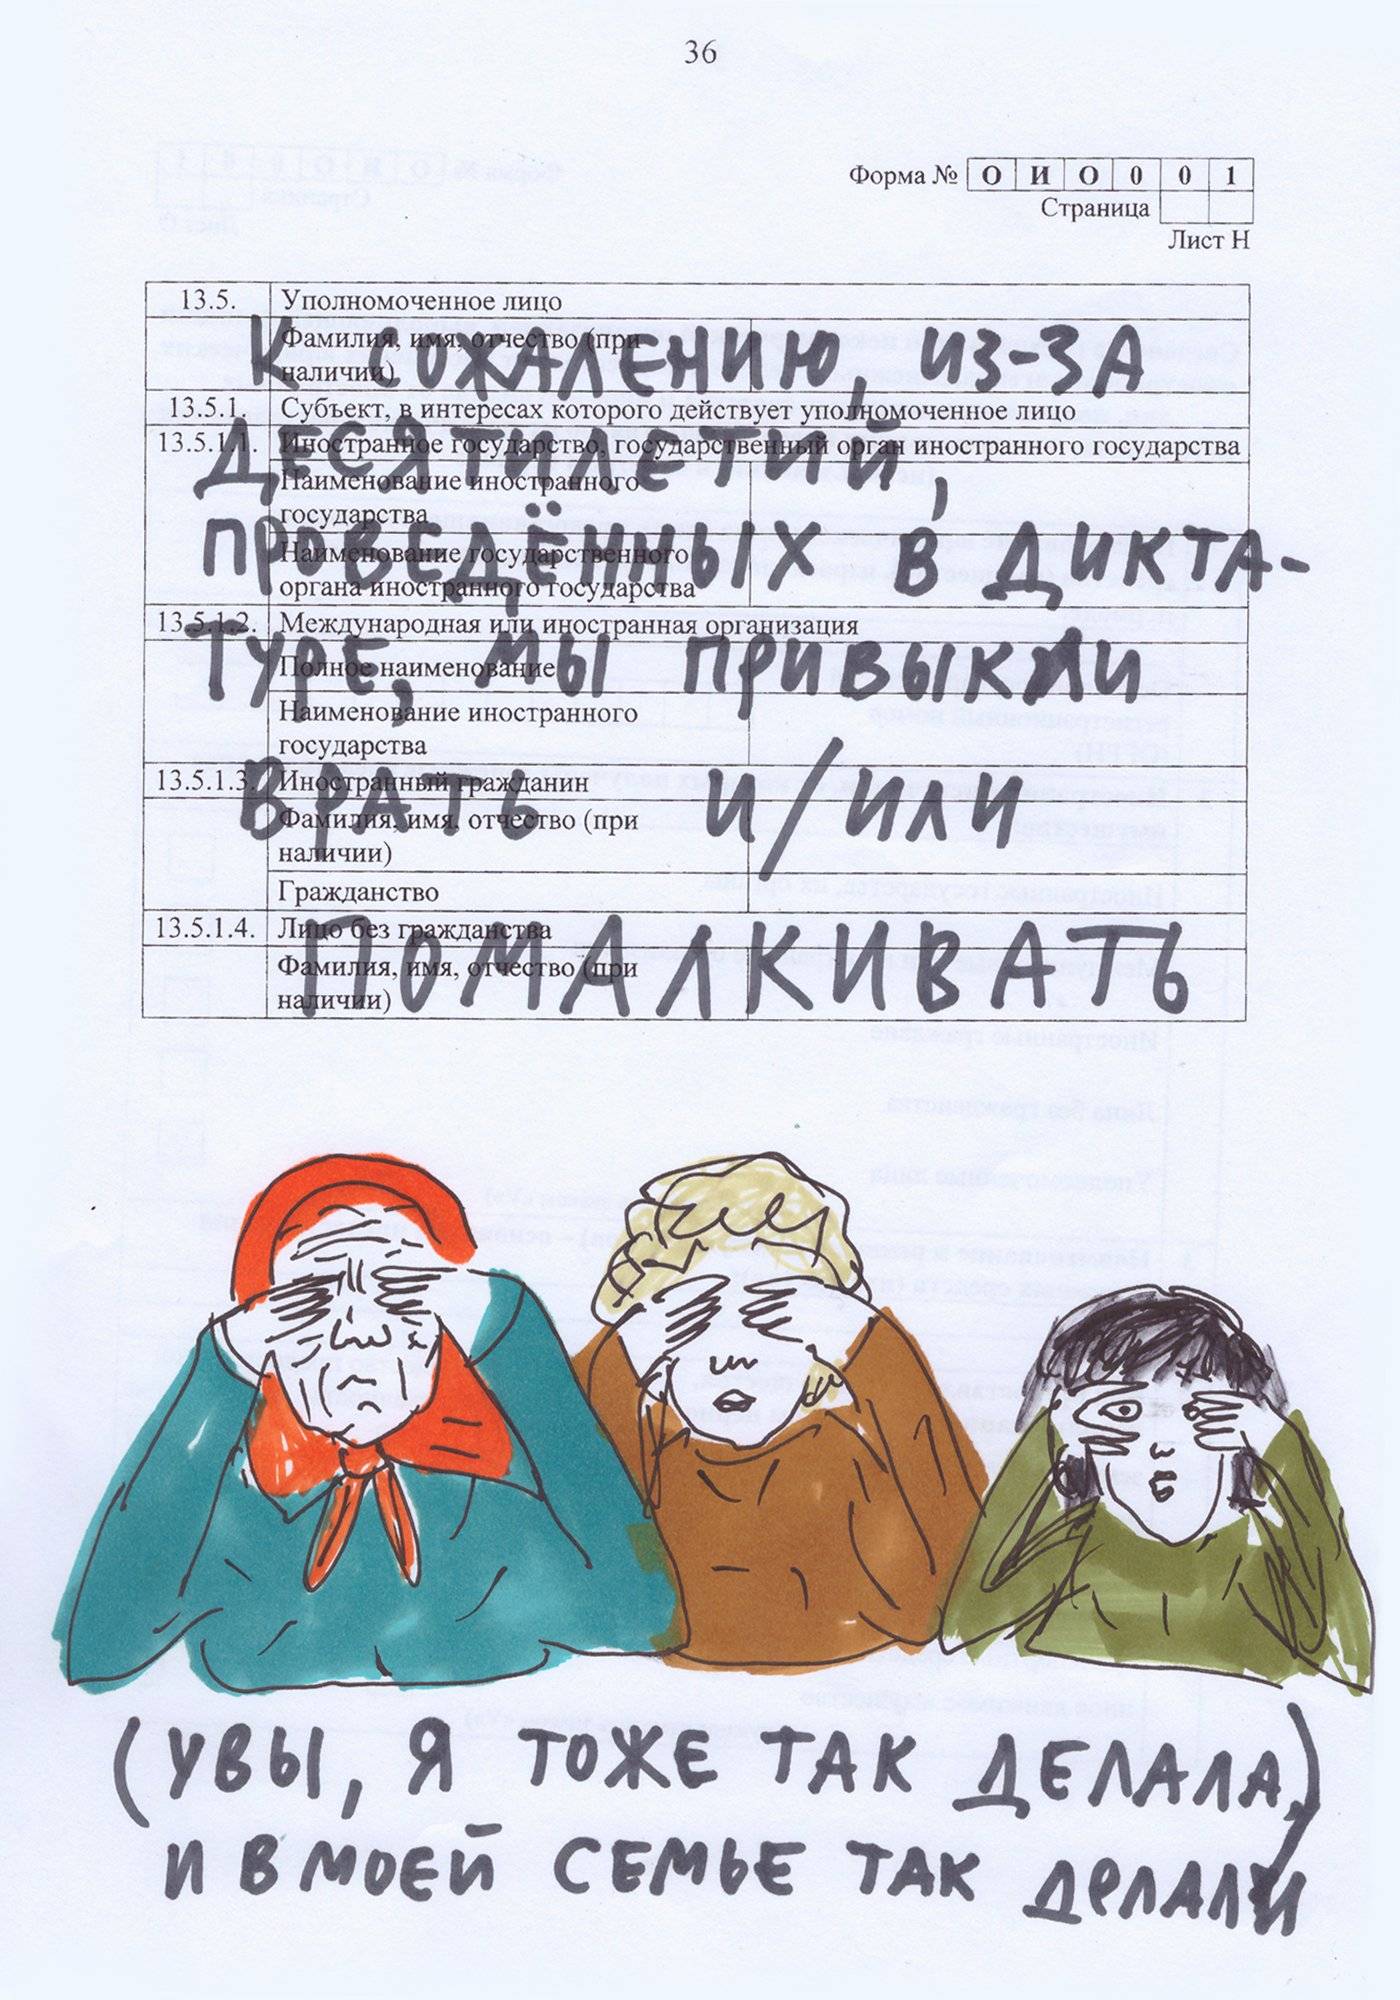 Odręczny rysunek zrobiony na urzędowym dokumencie. Trzy kobiety, prawdopodobnie, babcia, córka i wnuczka, wszystkie zasłaniają sobie rękami oczy